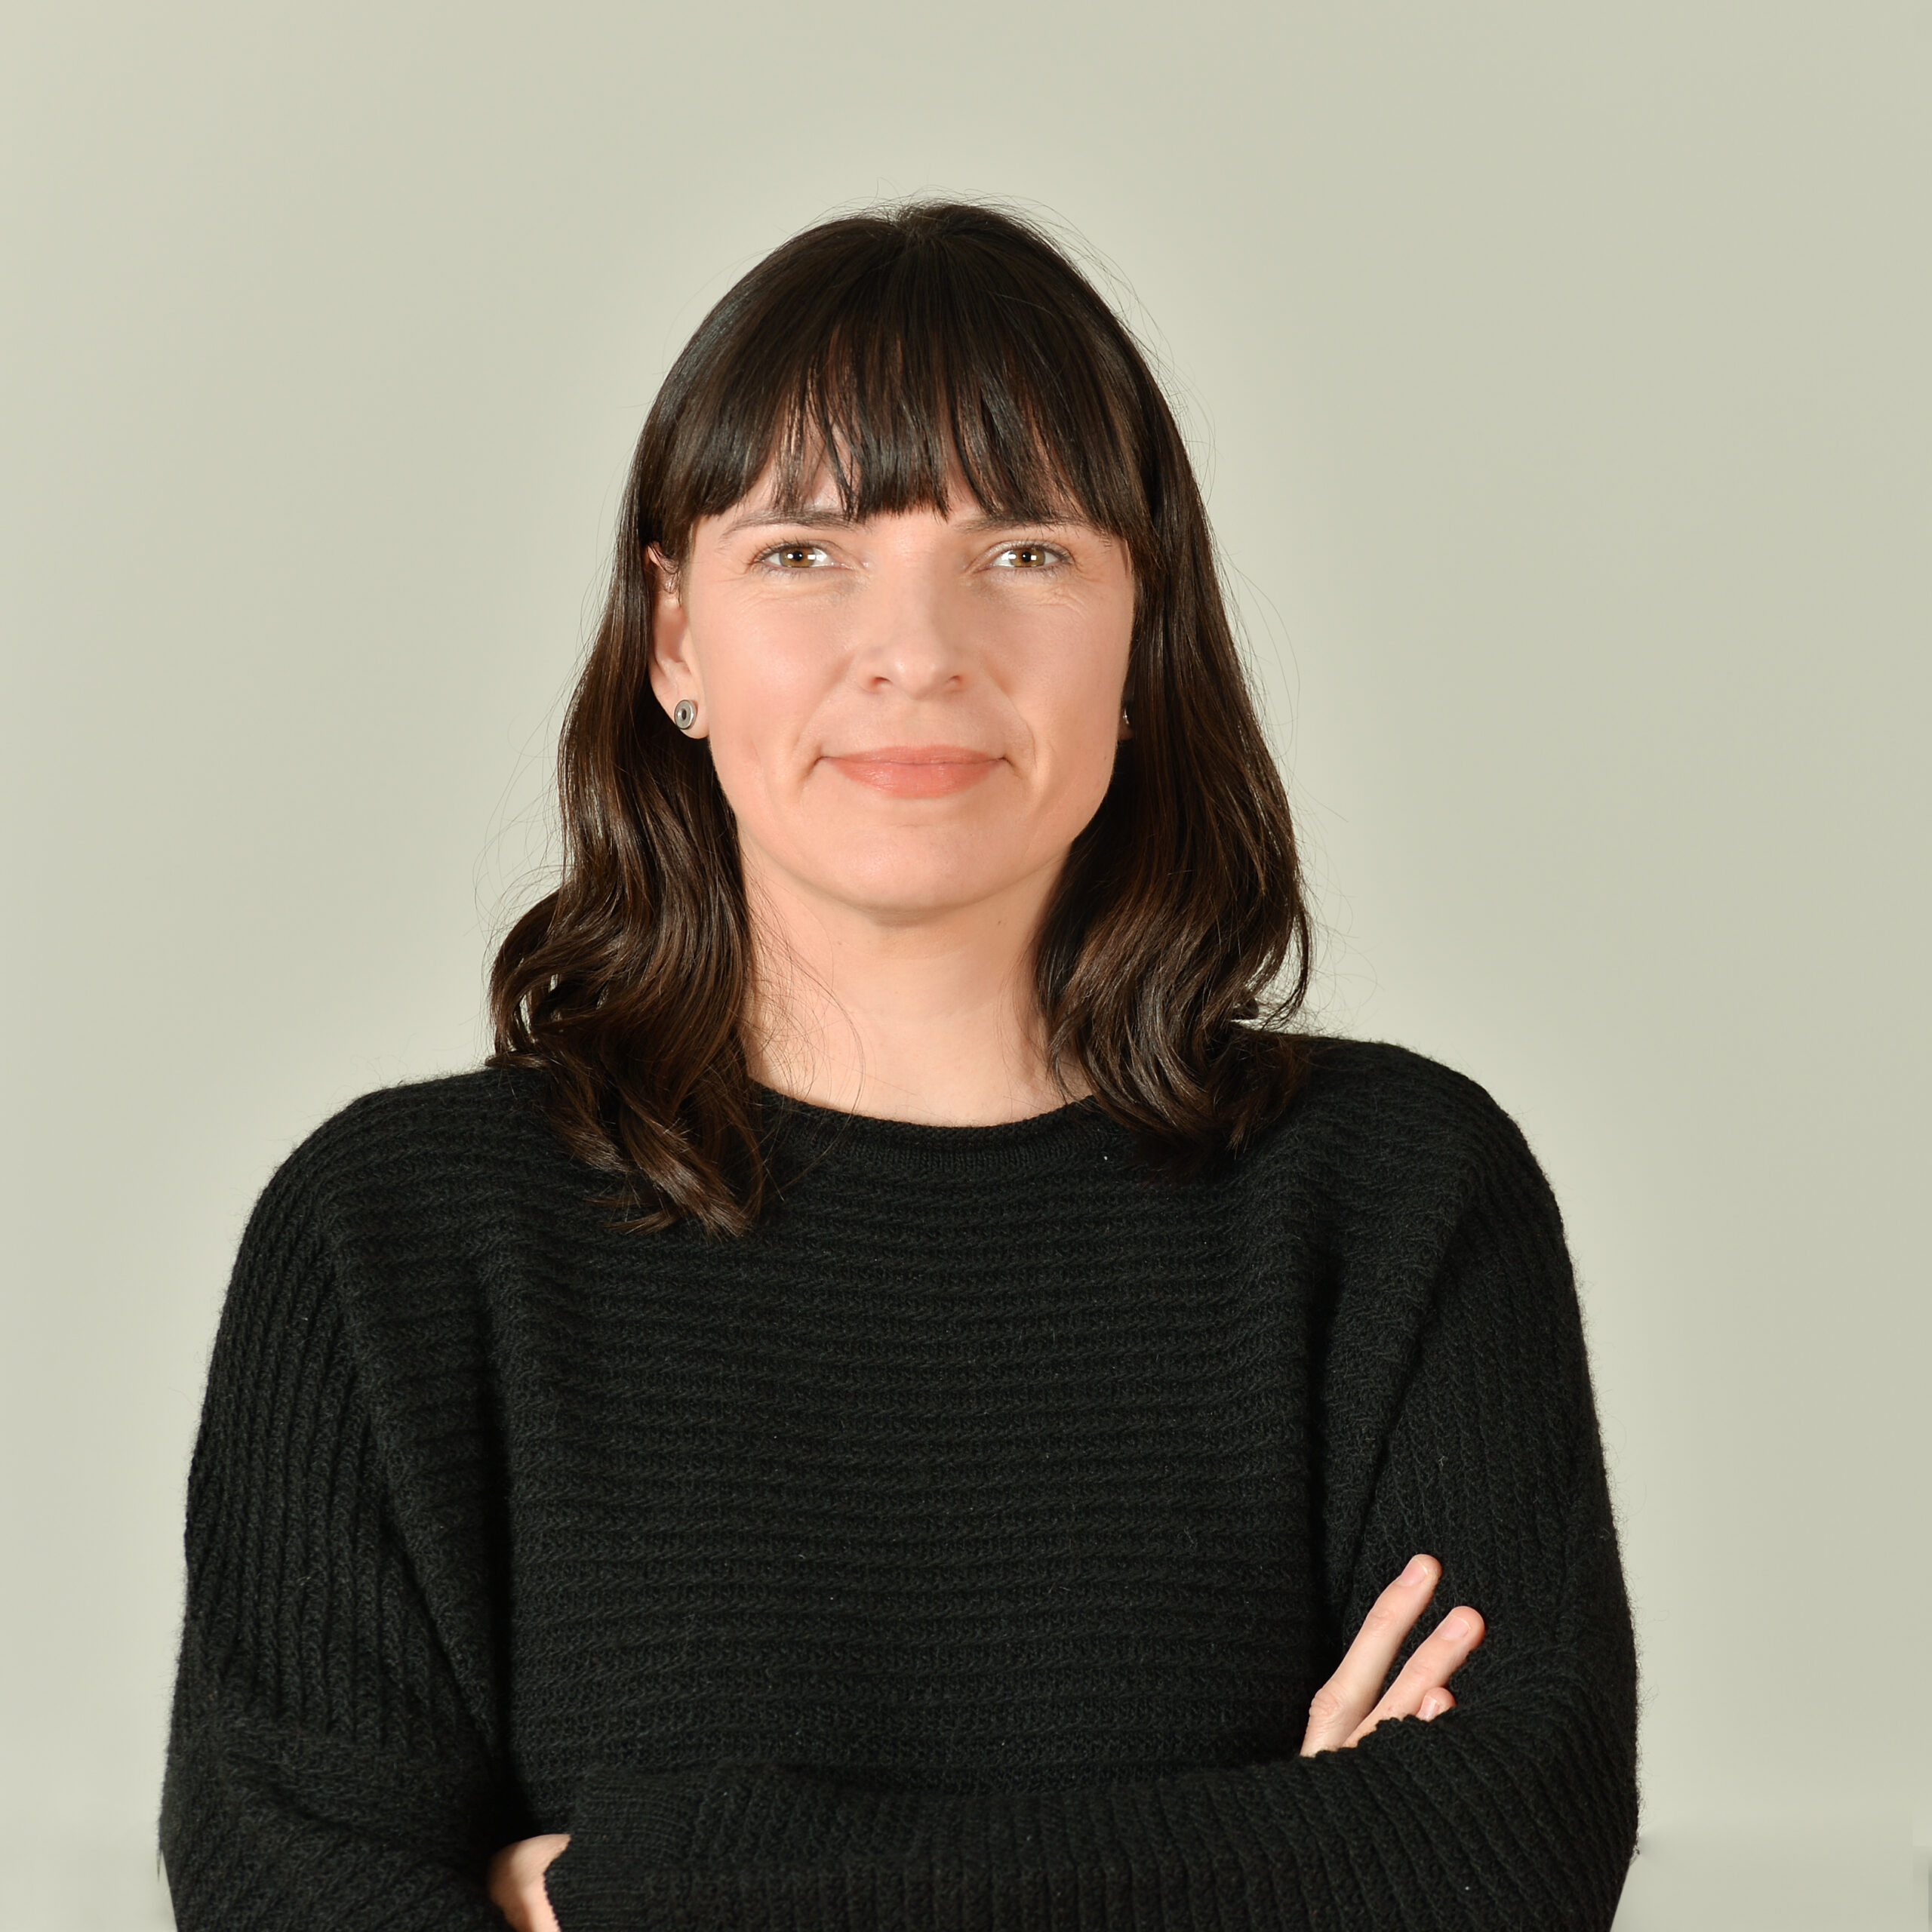 Profilbild von Dr. Claudia Hildenbrandt in einem schwarzen Pullover.